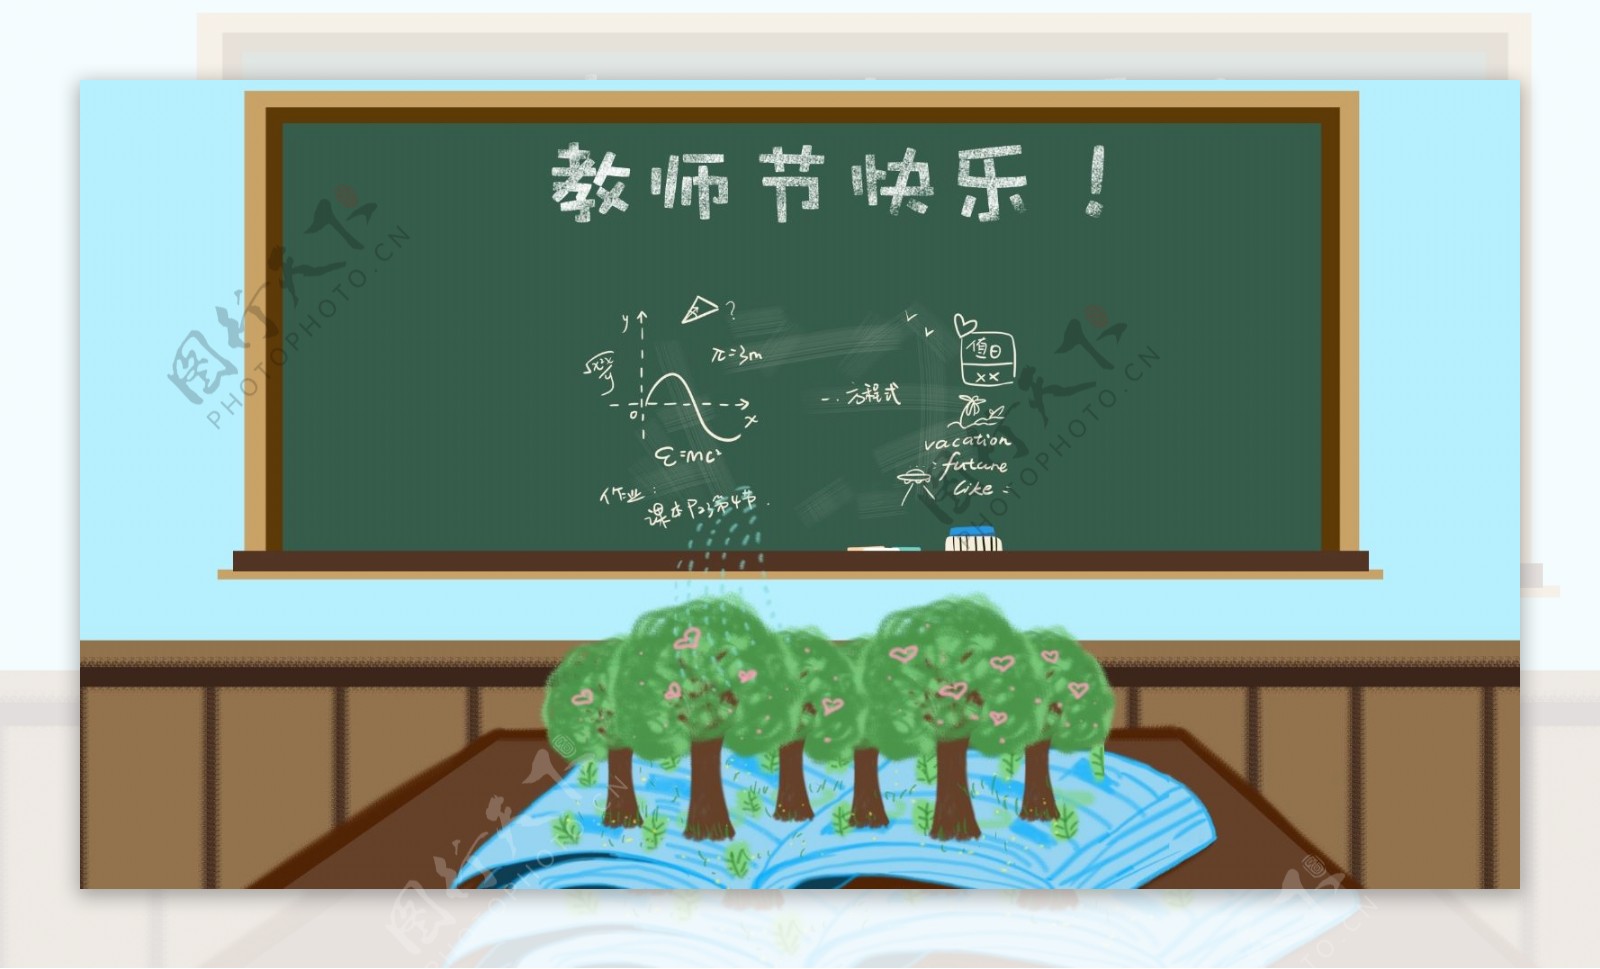 教师节快乐园丁主题黑板讲台教室背景图